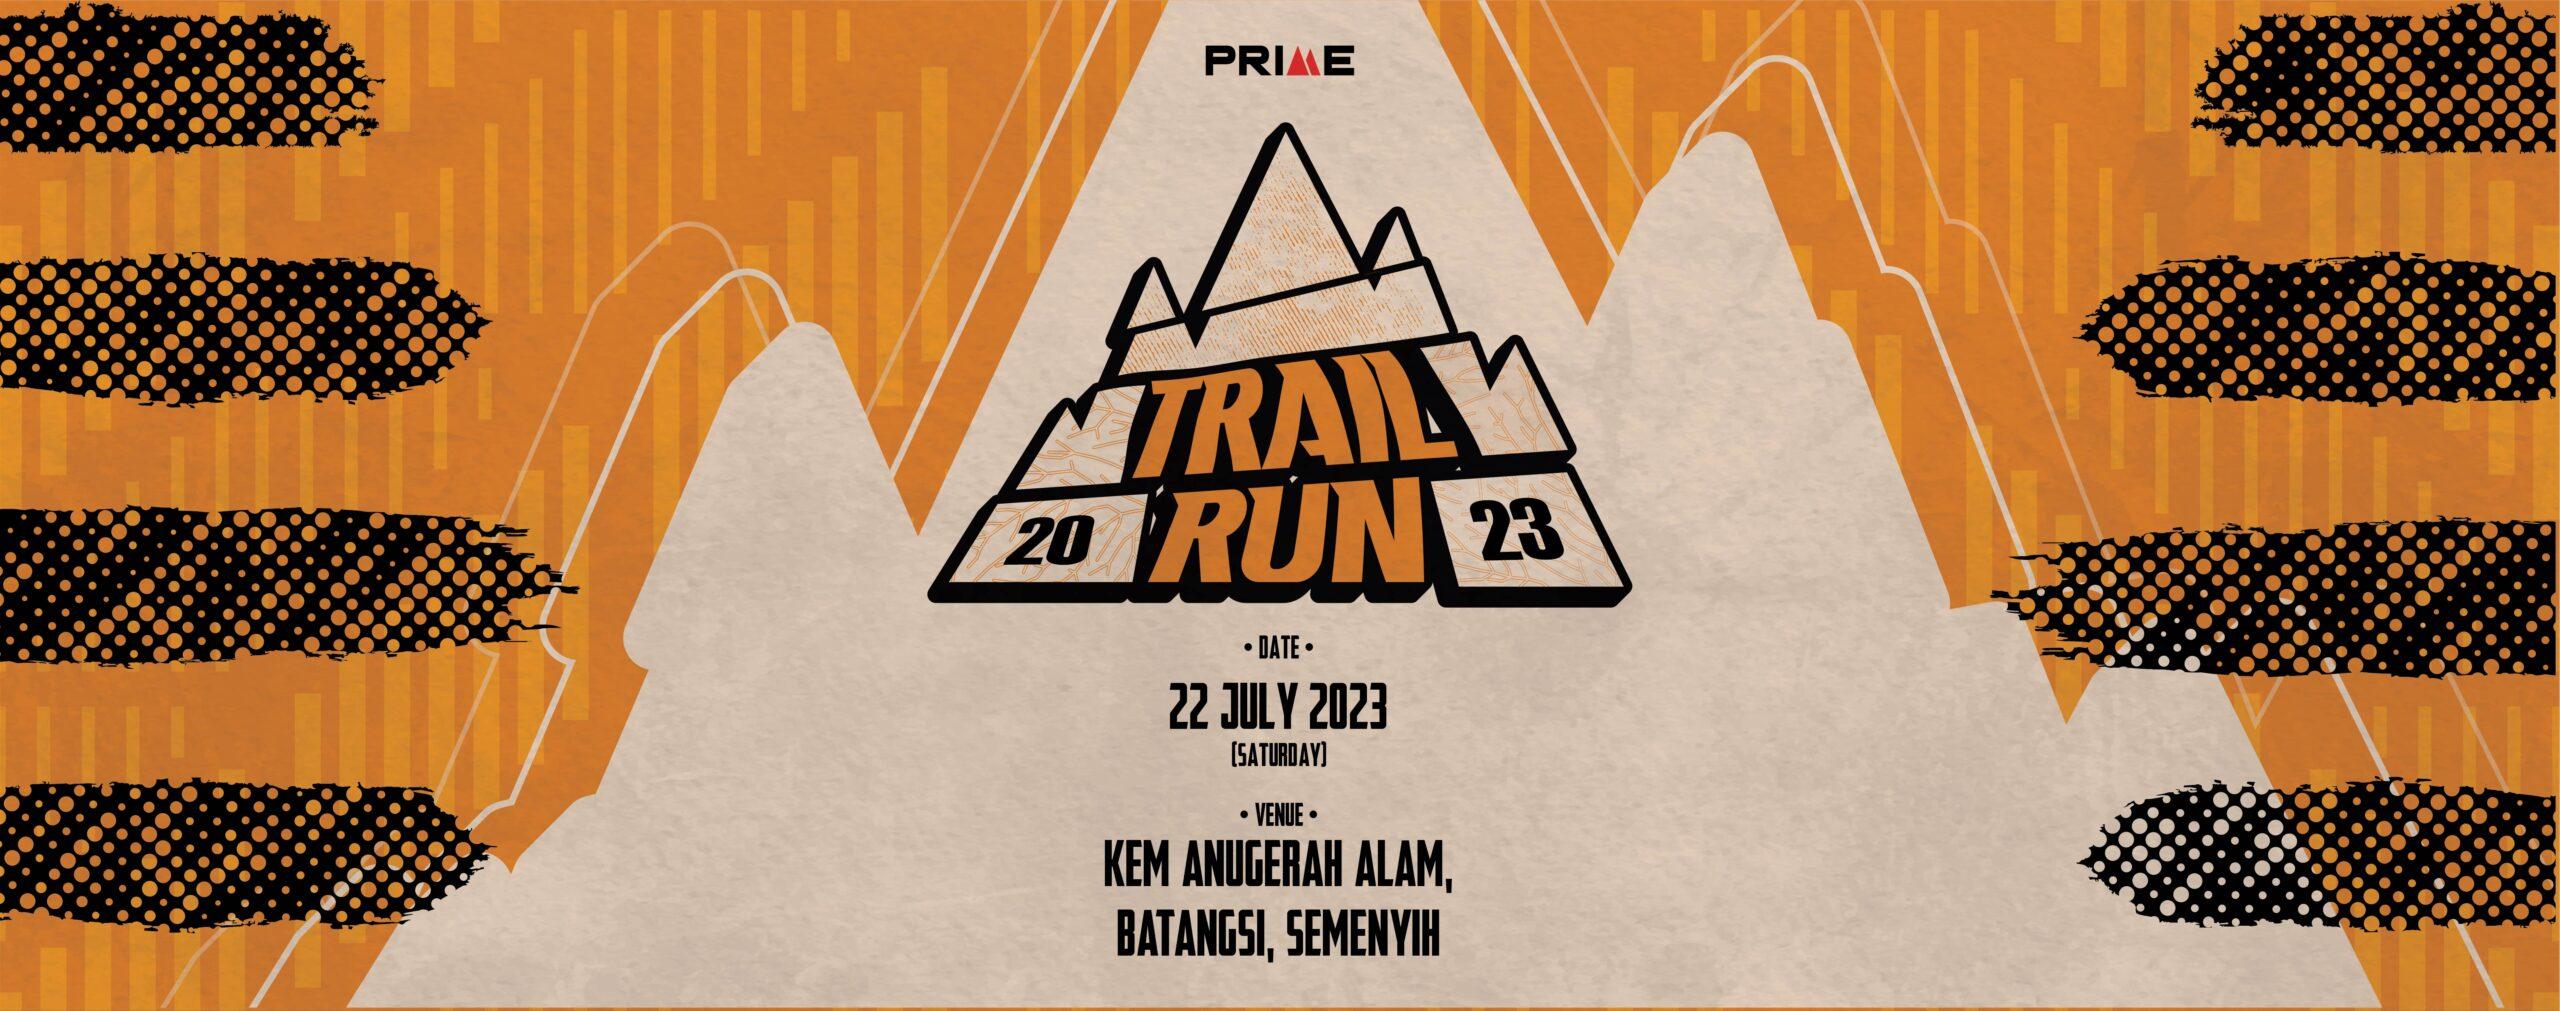 PRIME Trail Run Selangor, Malaysia, 2023